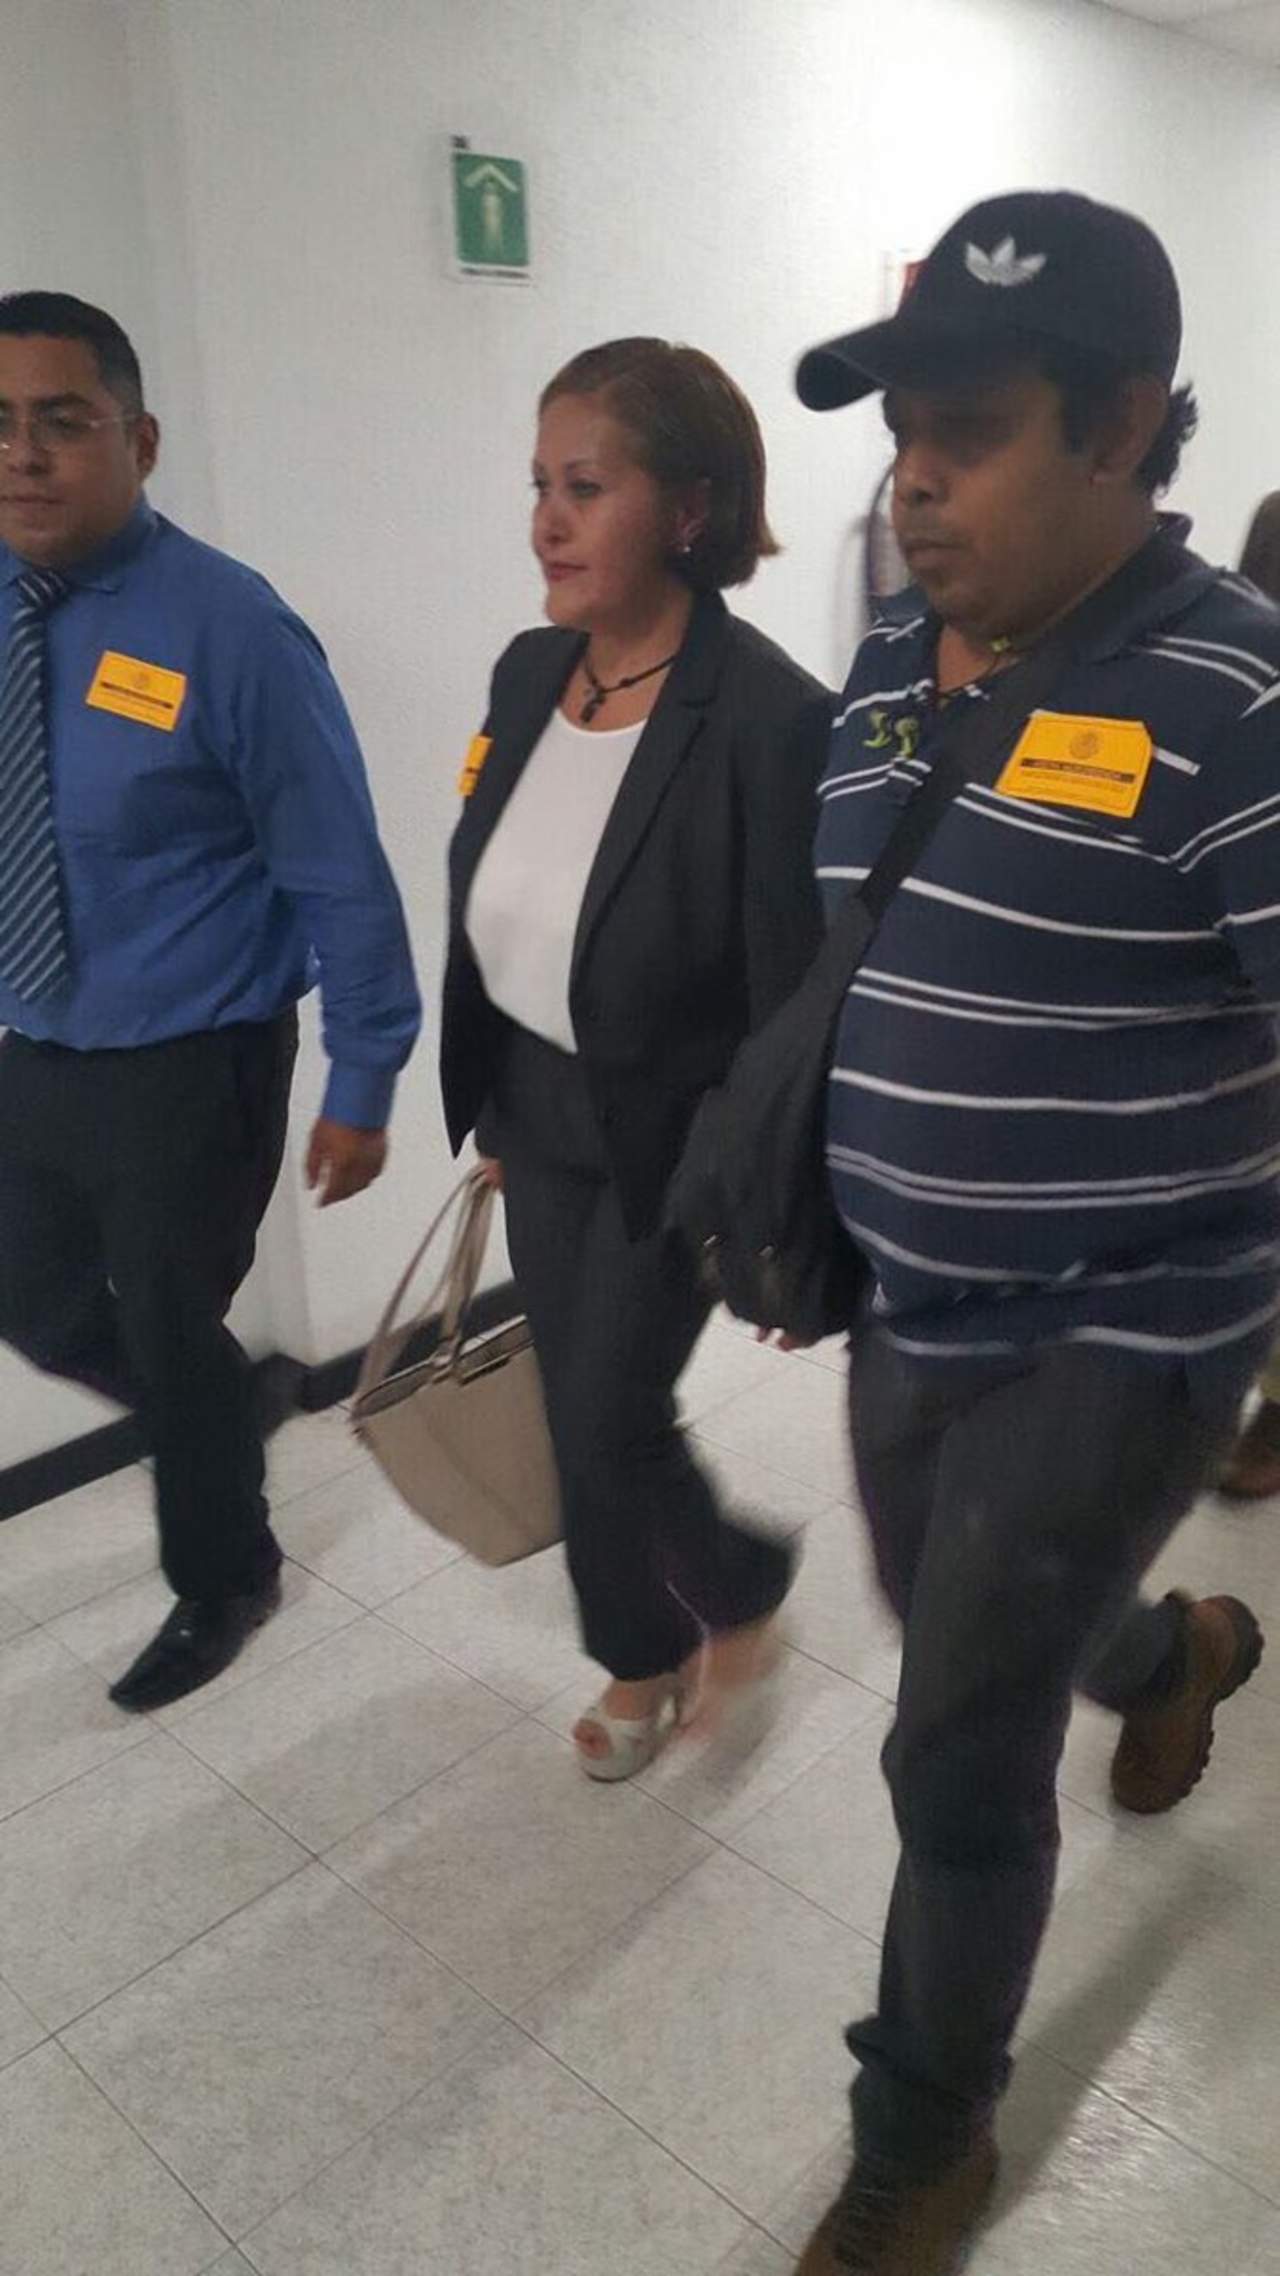 Acompañada por dos abogados, Eva Cadena arribó a San Lázaro alrededor de las 12:30 horas y no tardó más de 30 minutos en salir. (TWITTER)
